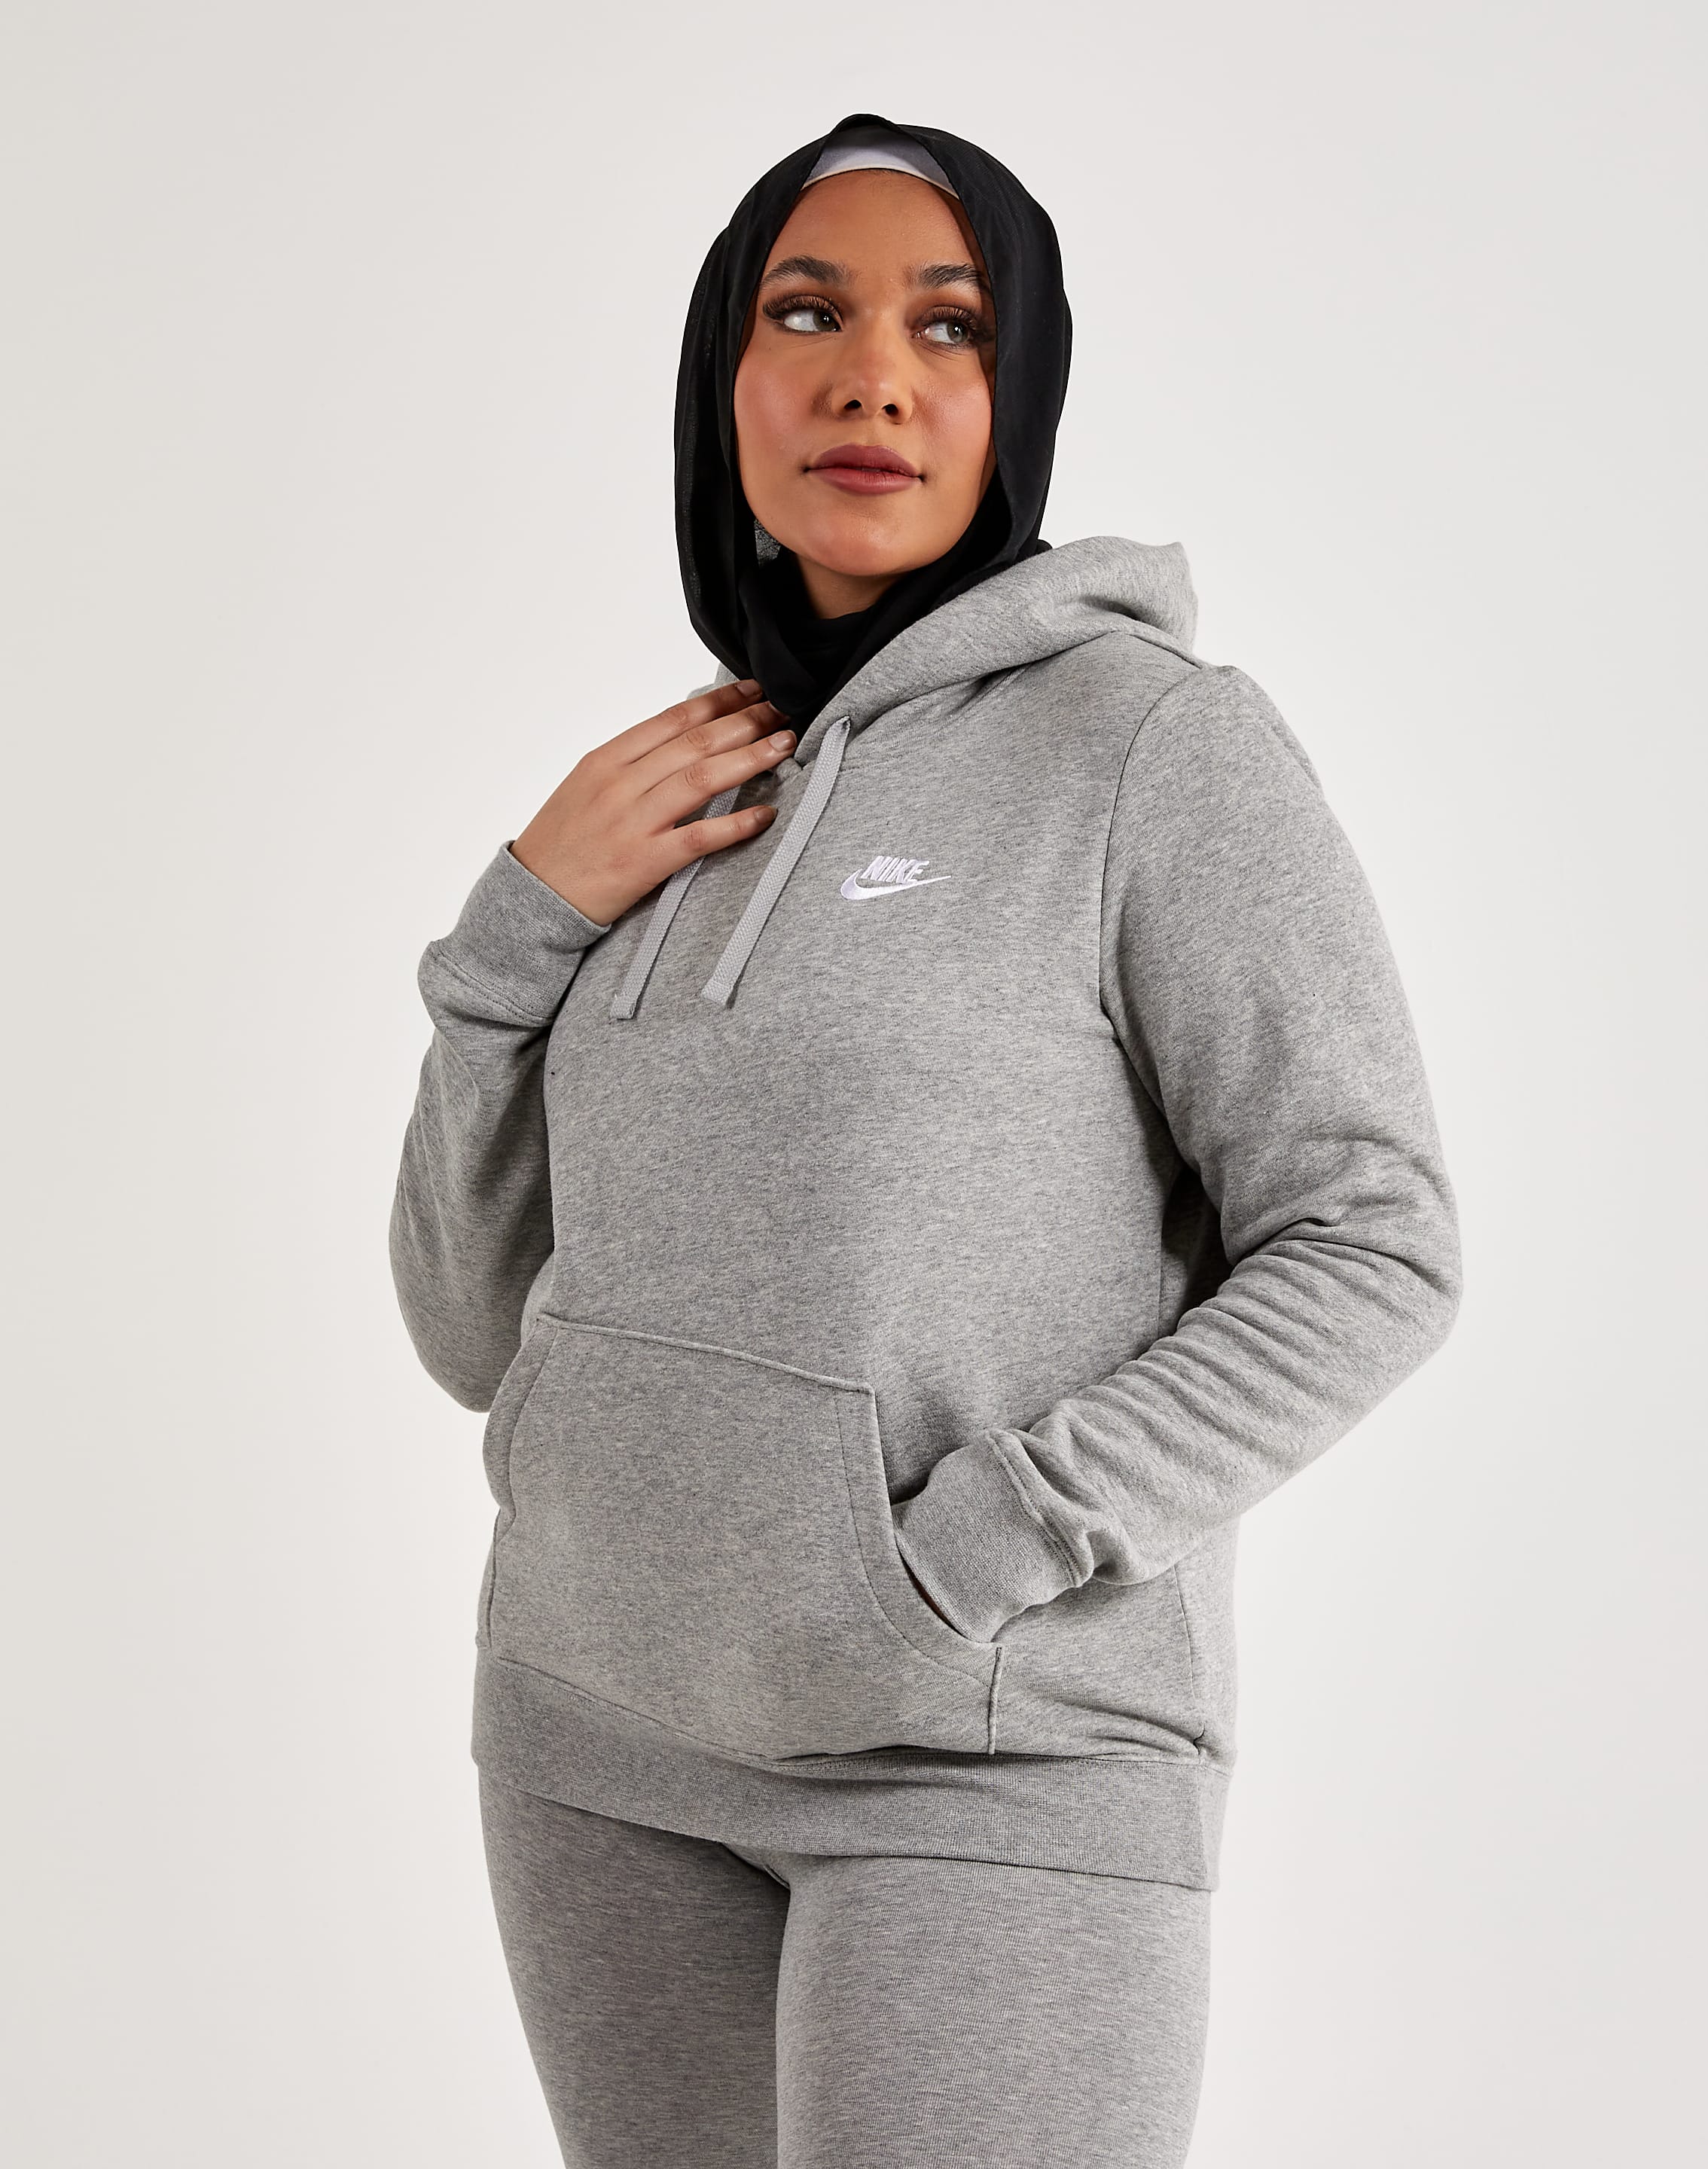 Women's Sportswear Club Fleece Hoodie from Nike